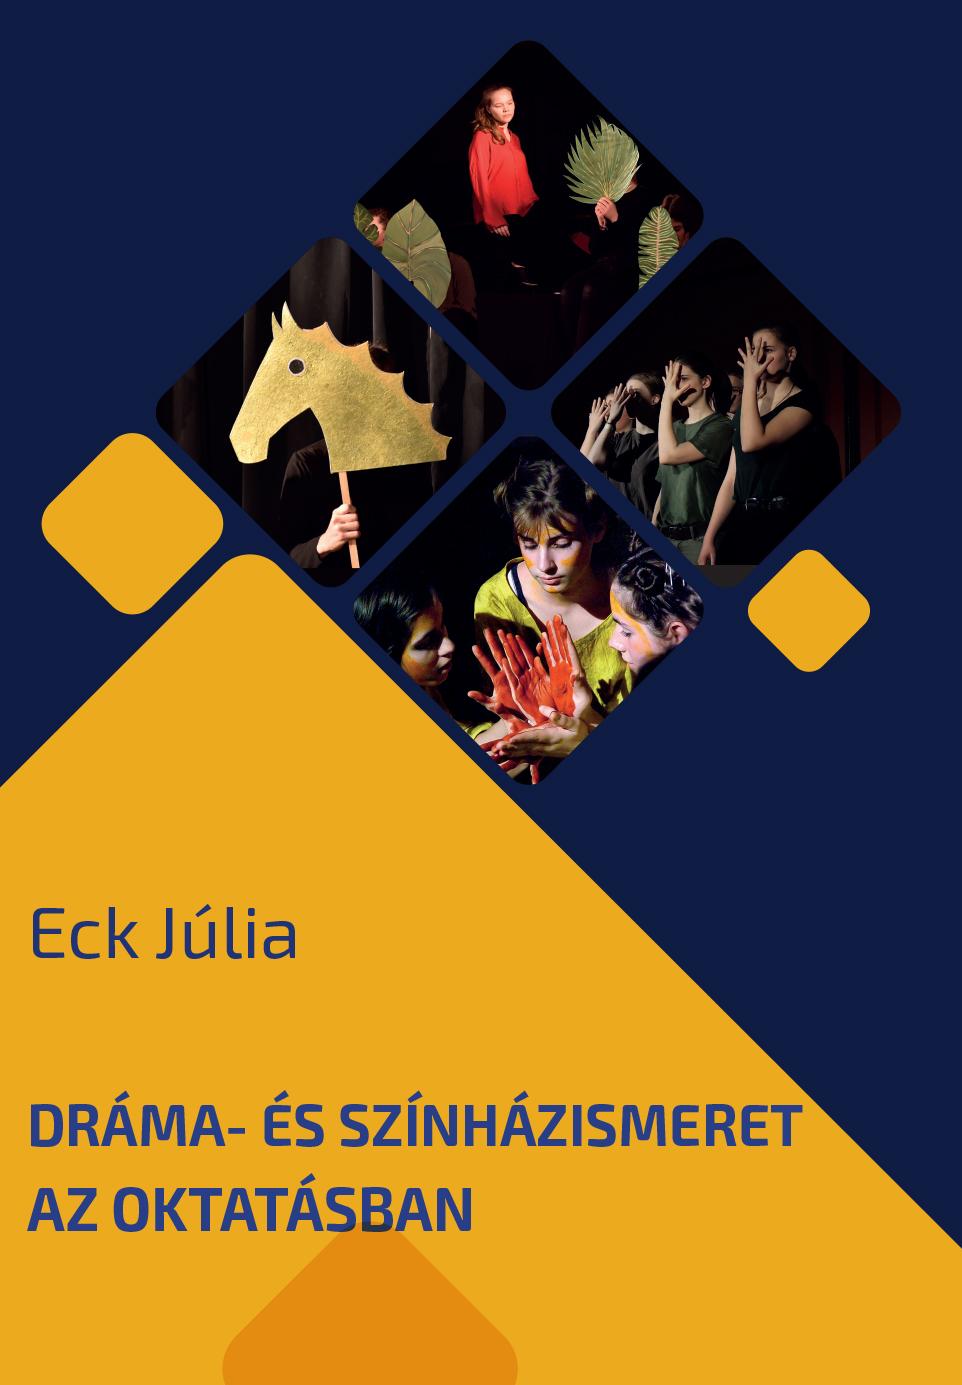 Eck Júlia. Dráma- és színházismeret az oktatásban. Oktatási segédlet.  Pázmány Péter Katolikus Egyetem Budapest, PDF Free Download